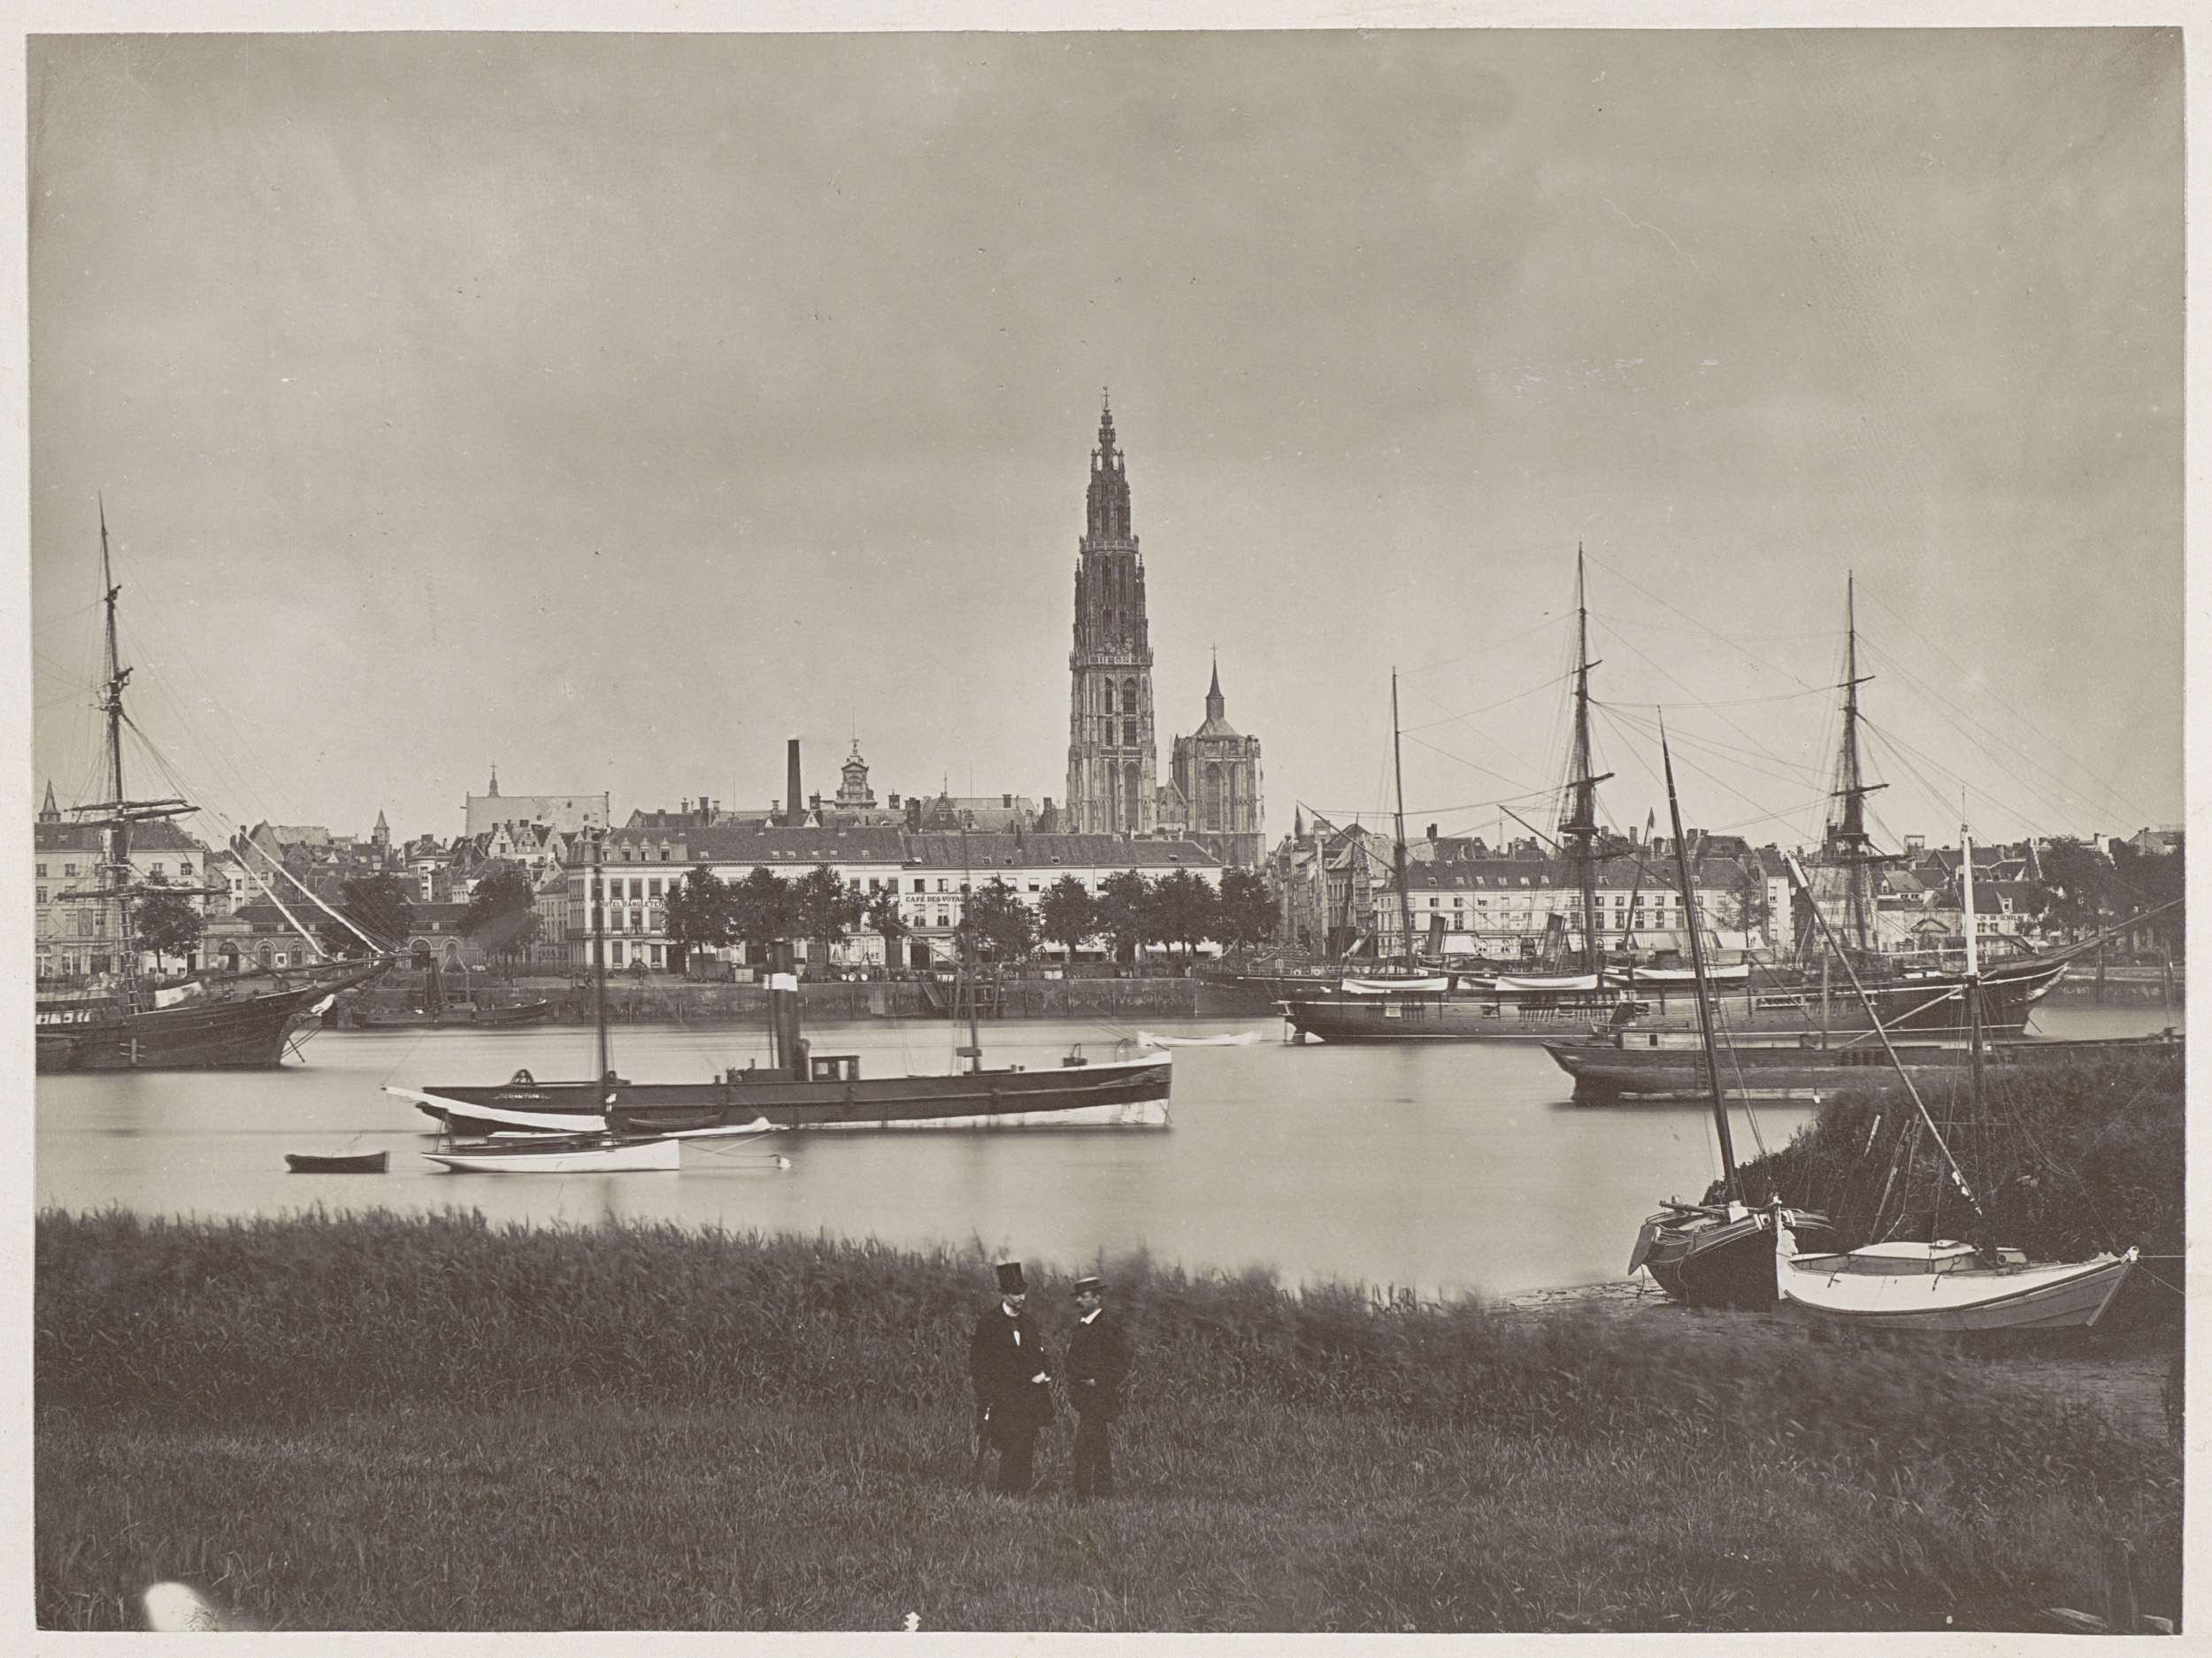 Schepen op de Schelde, op de achtergrond de Onze-Lieve-Vrouwekathedraal in Antwerp